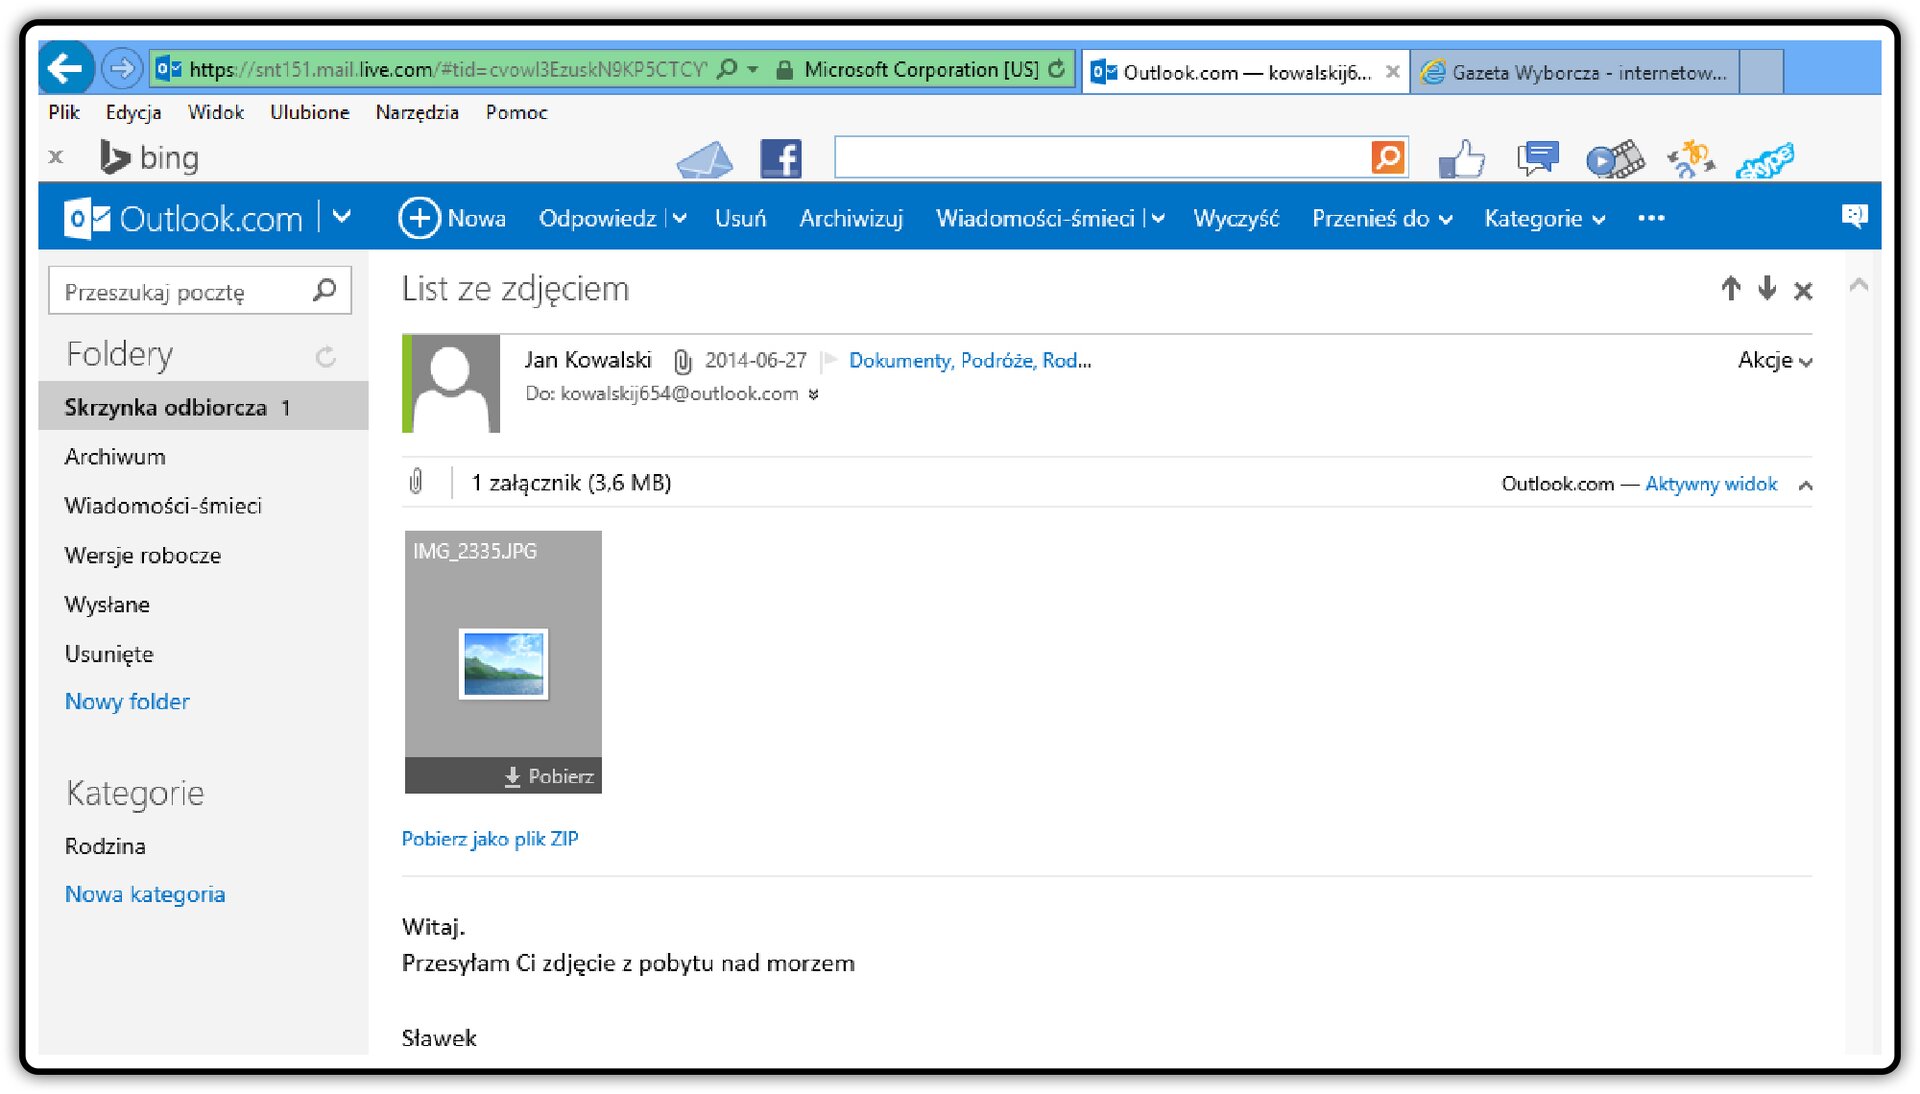 Zrzut okna skrzynki odbiorczej poczty Outlook.com z otwartą wiadomościa i widoczną ikoną załącznika